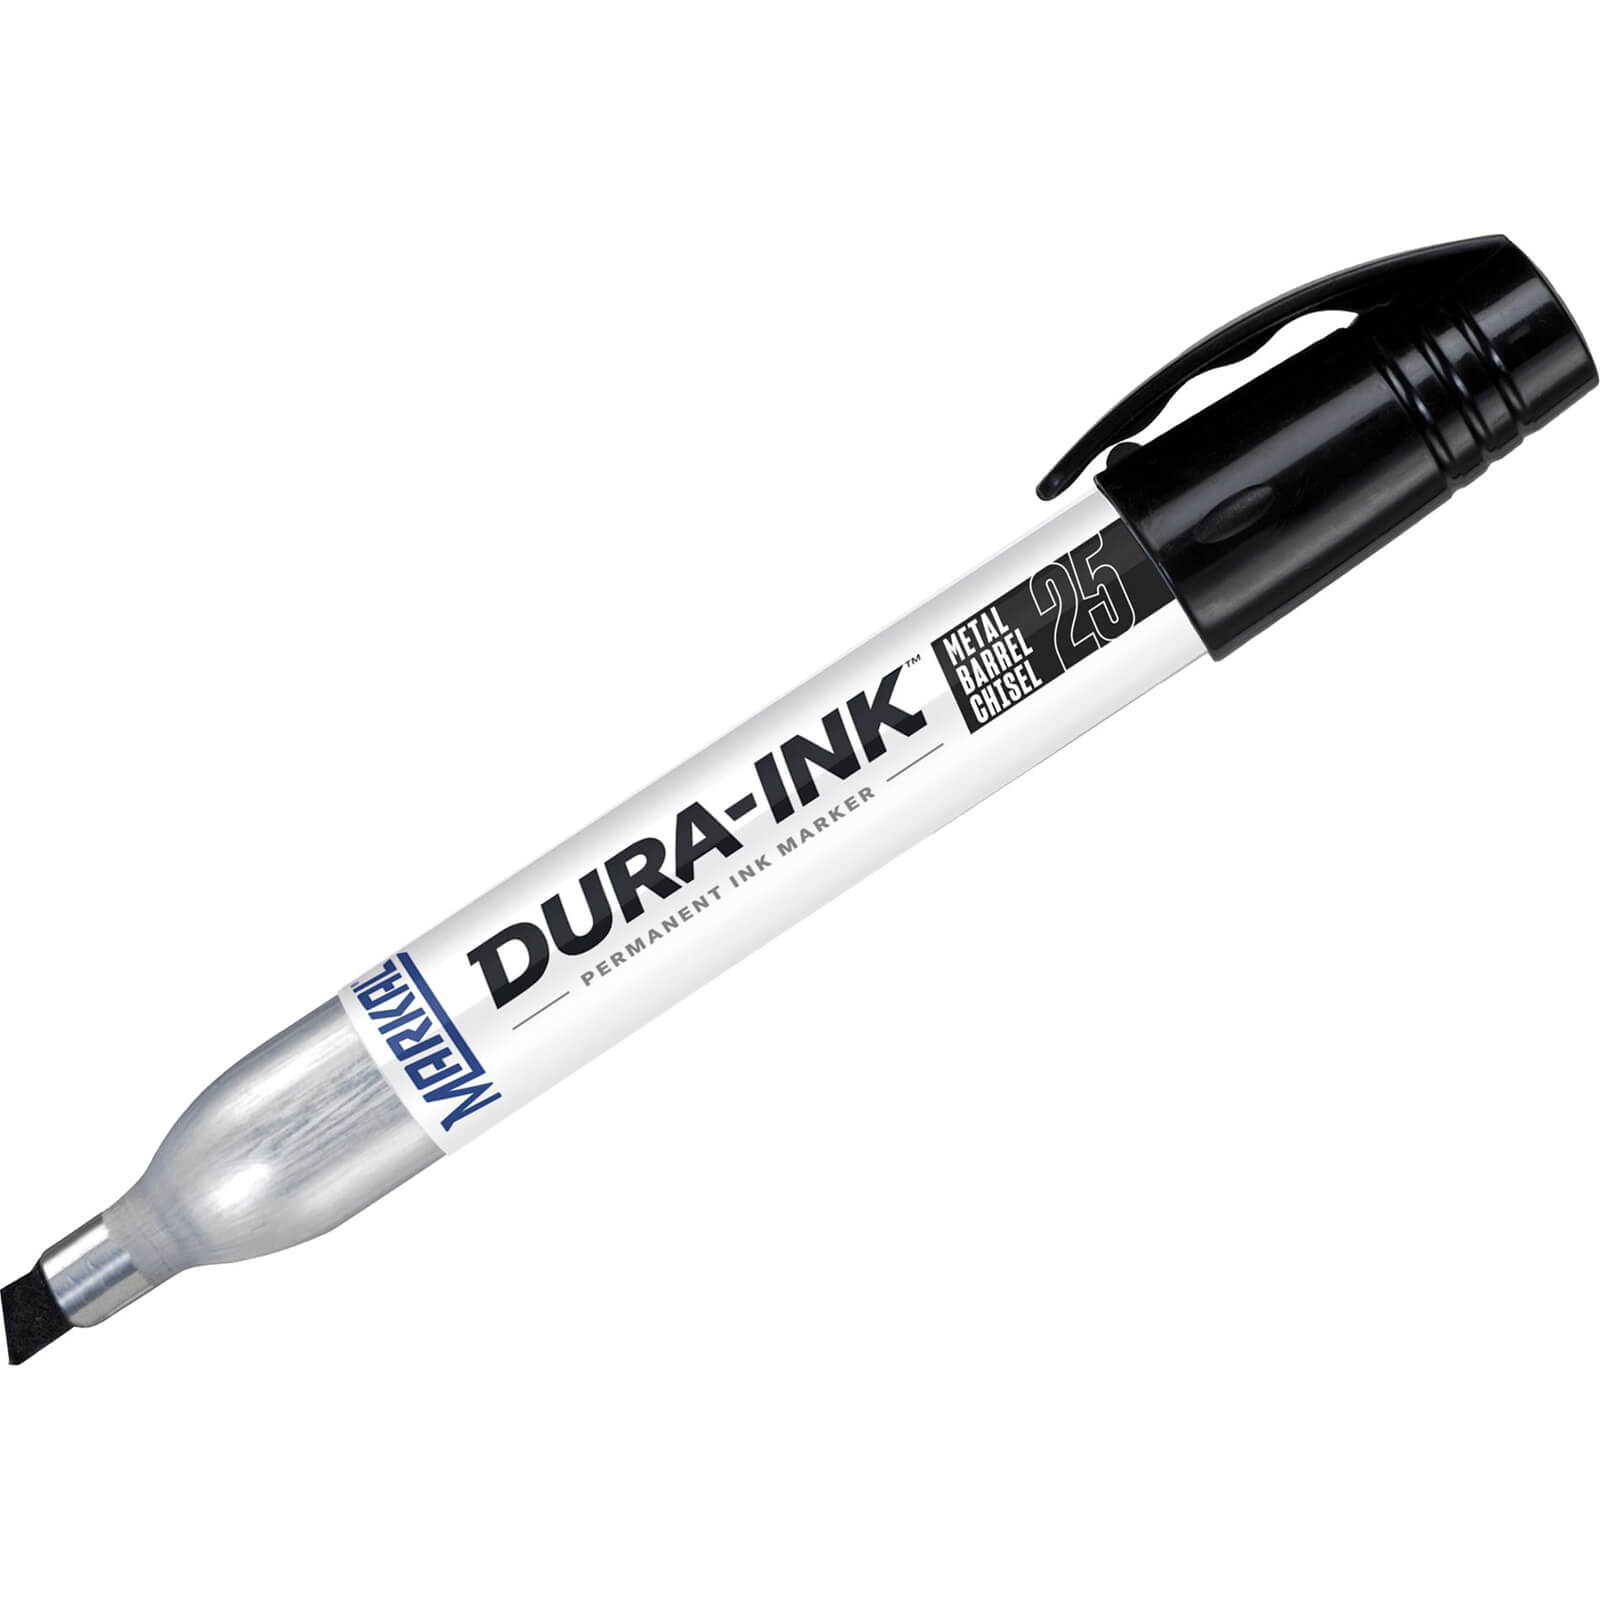 Image of Markal Dura Ink 25 Medium Chisel Tip Permanet Marker Pen Black Pack of 2